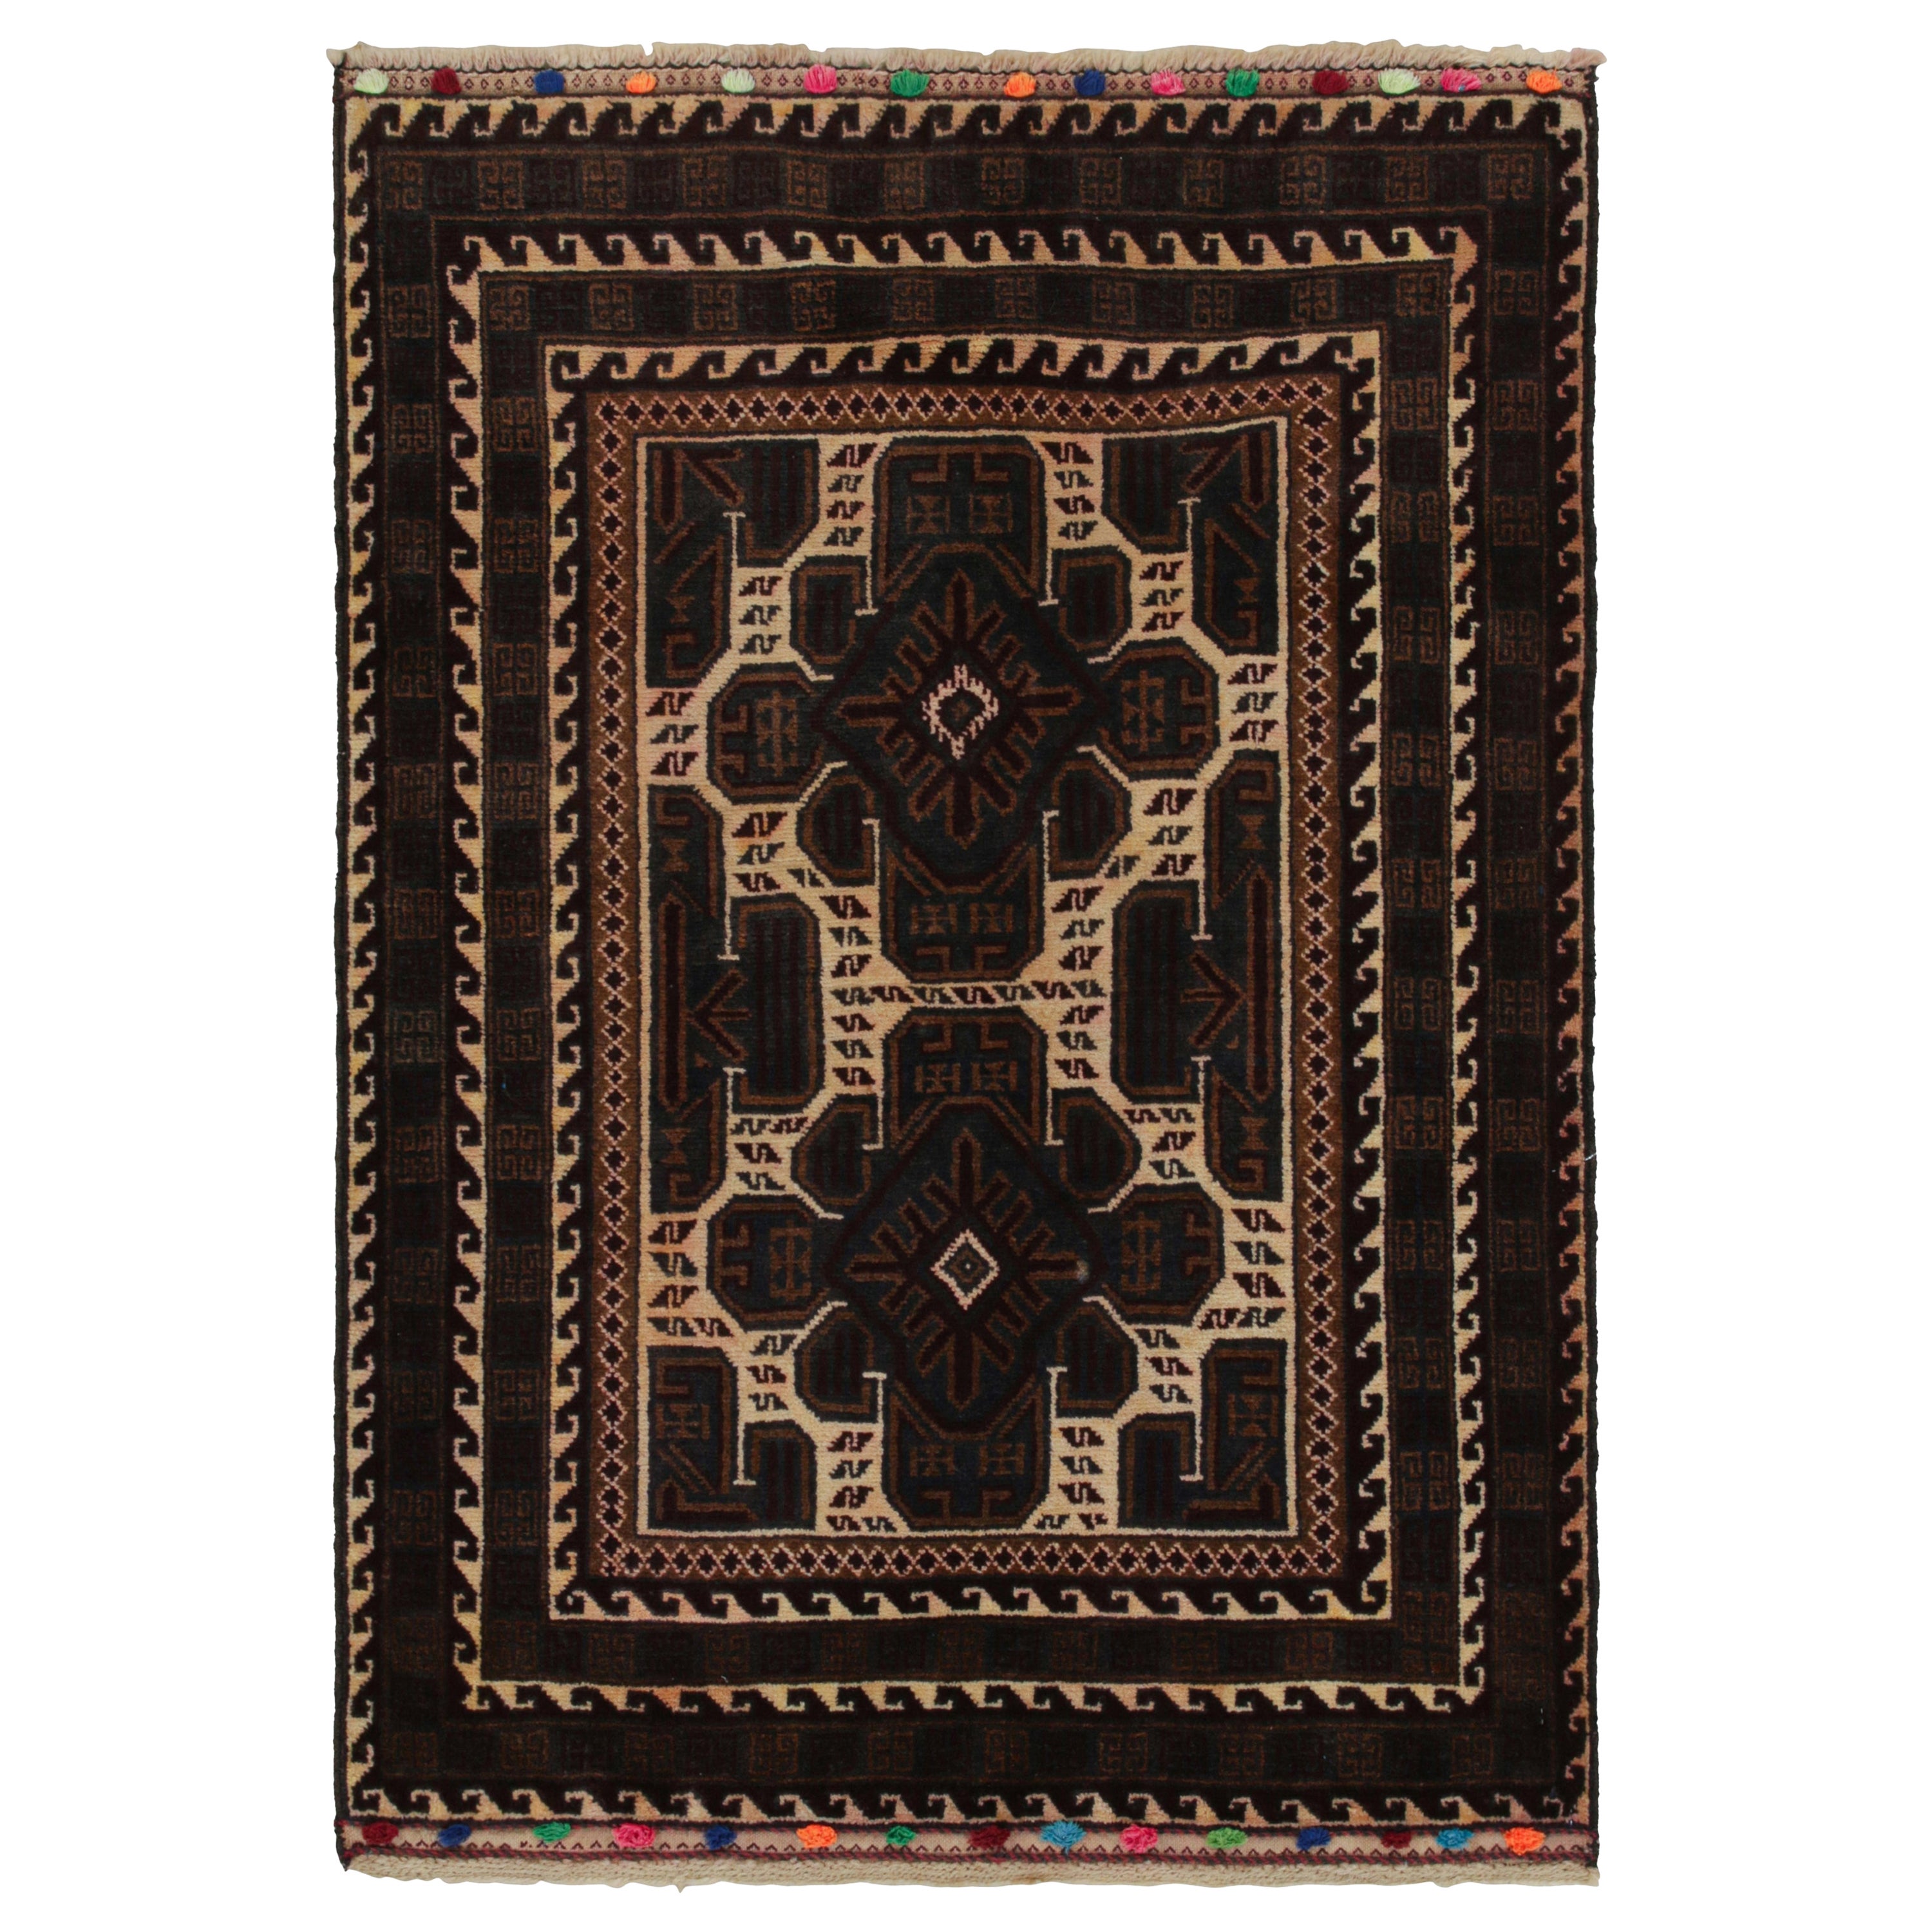 Tapis persan vintage Baluch à motifs beige, Brown et bleu de Rug & Kilim